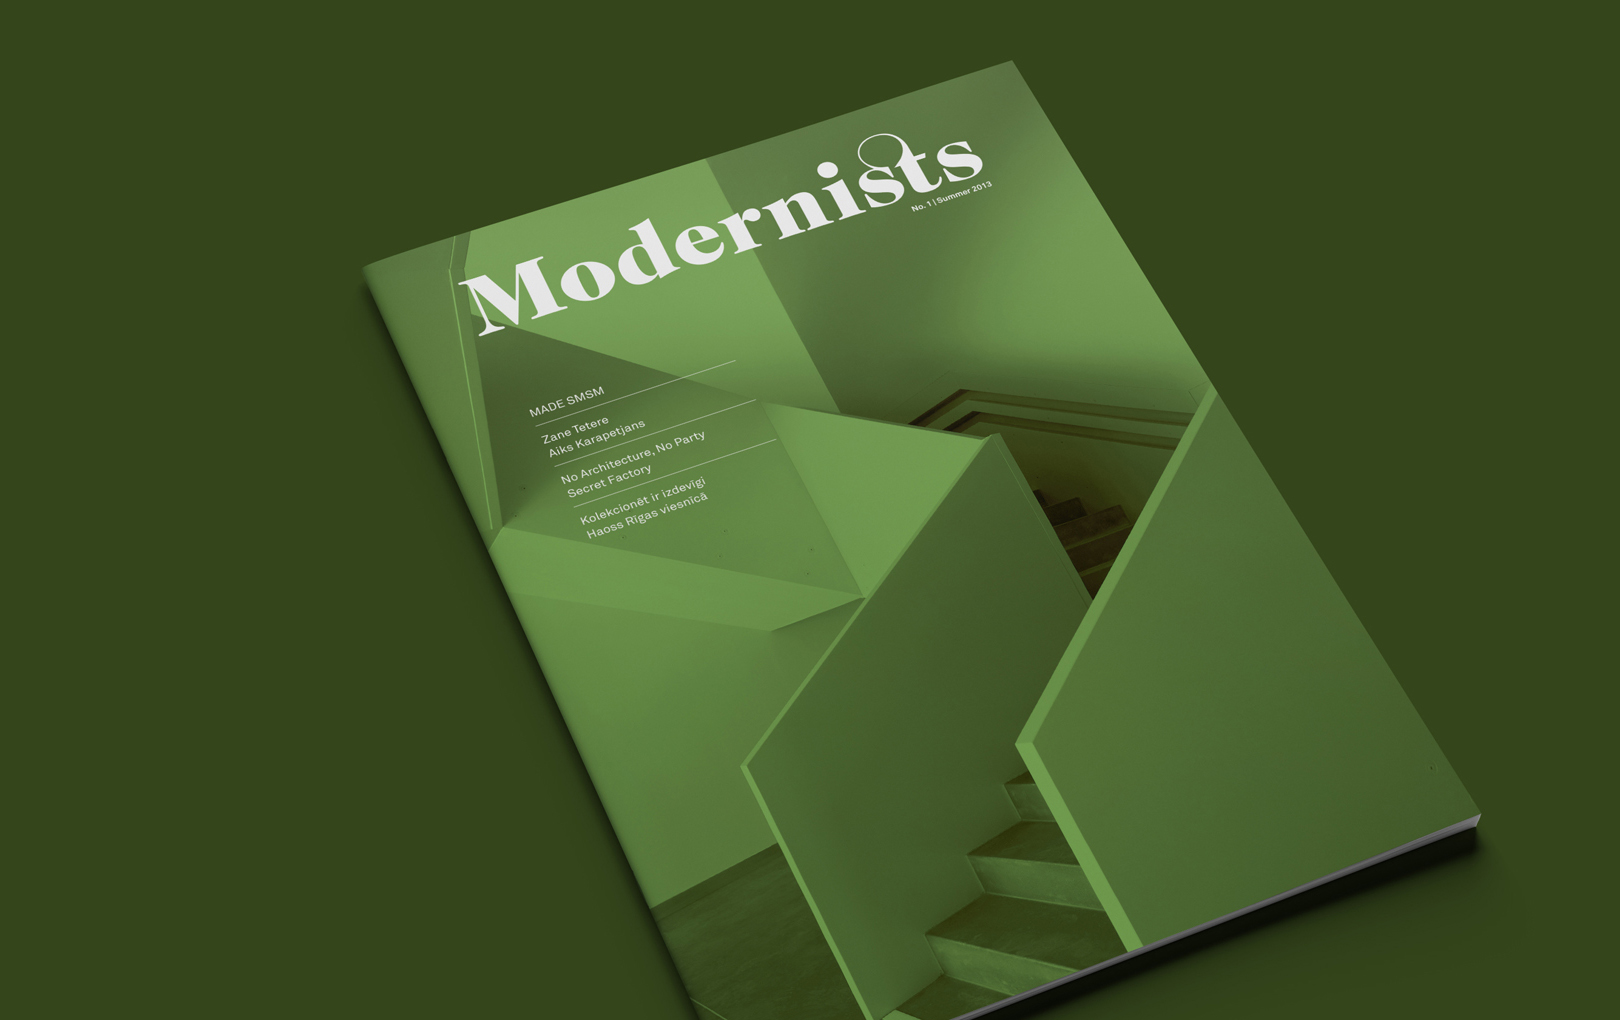 Modernists Magazine